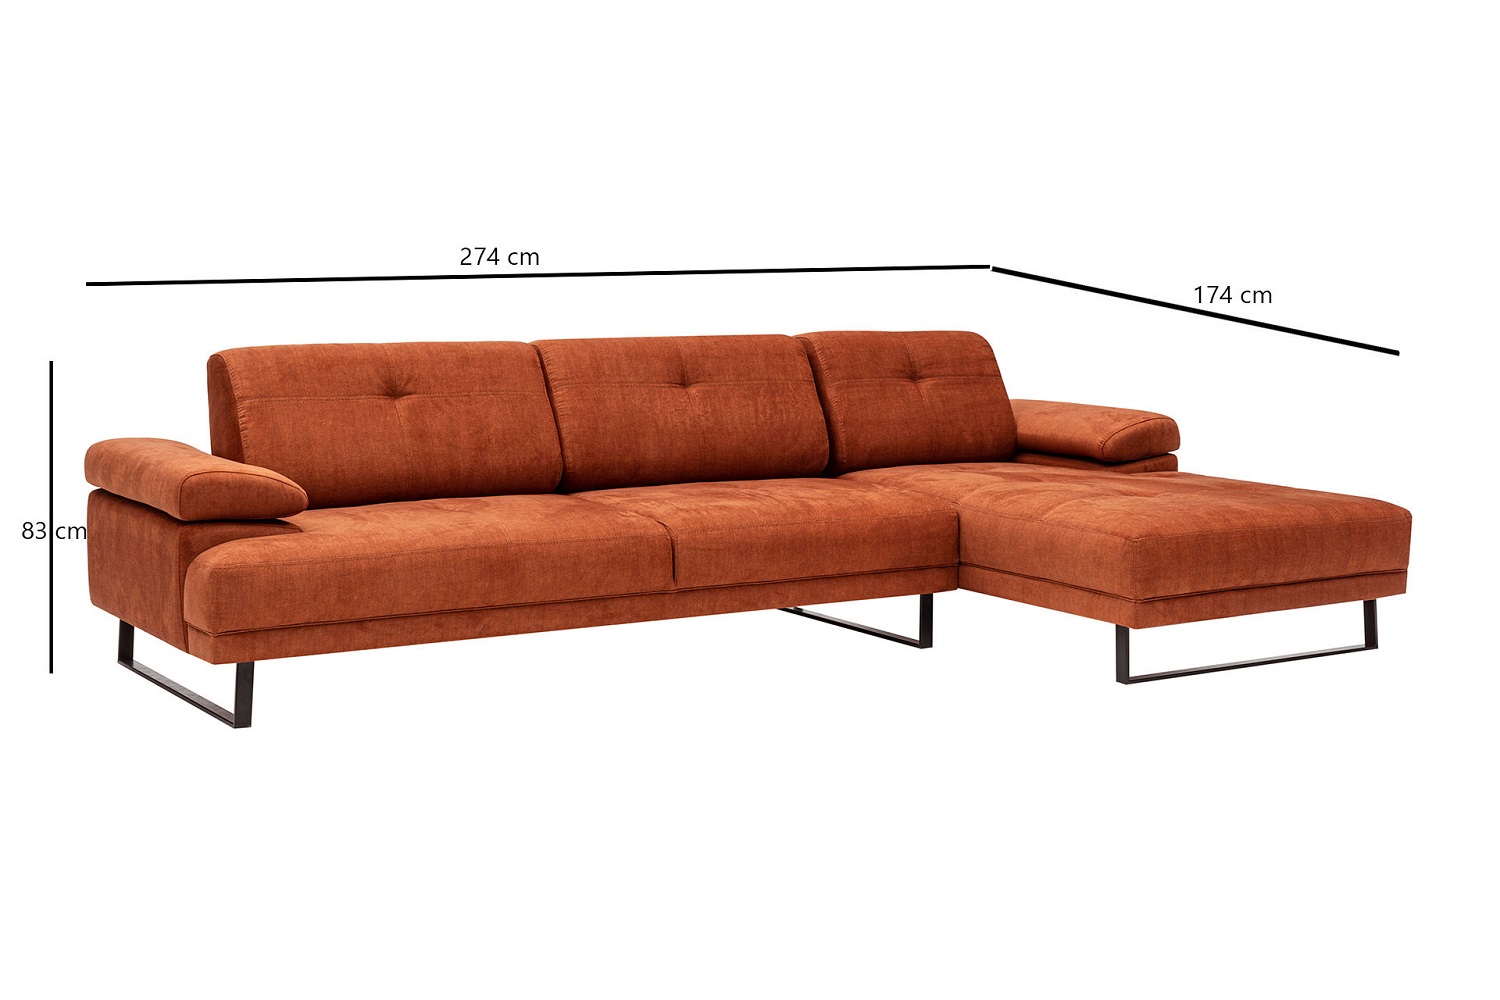 dizajnova-rohova-sedacka-vatusia-274-cm-oranzova-prava-1383